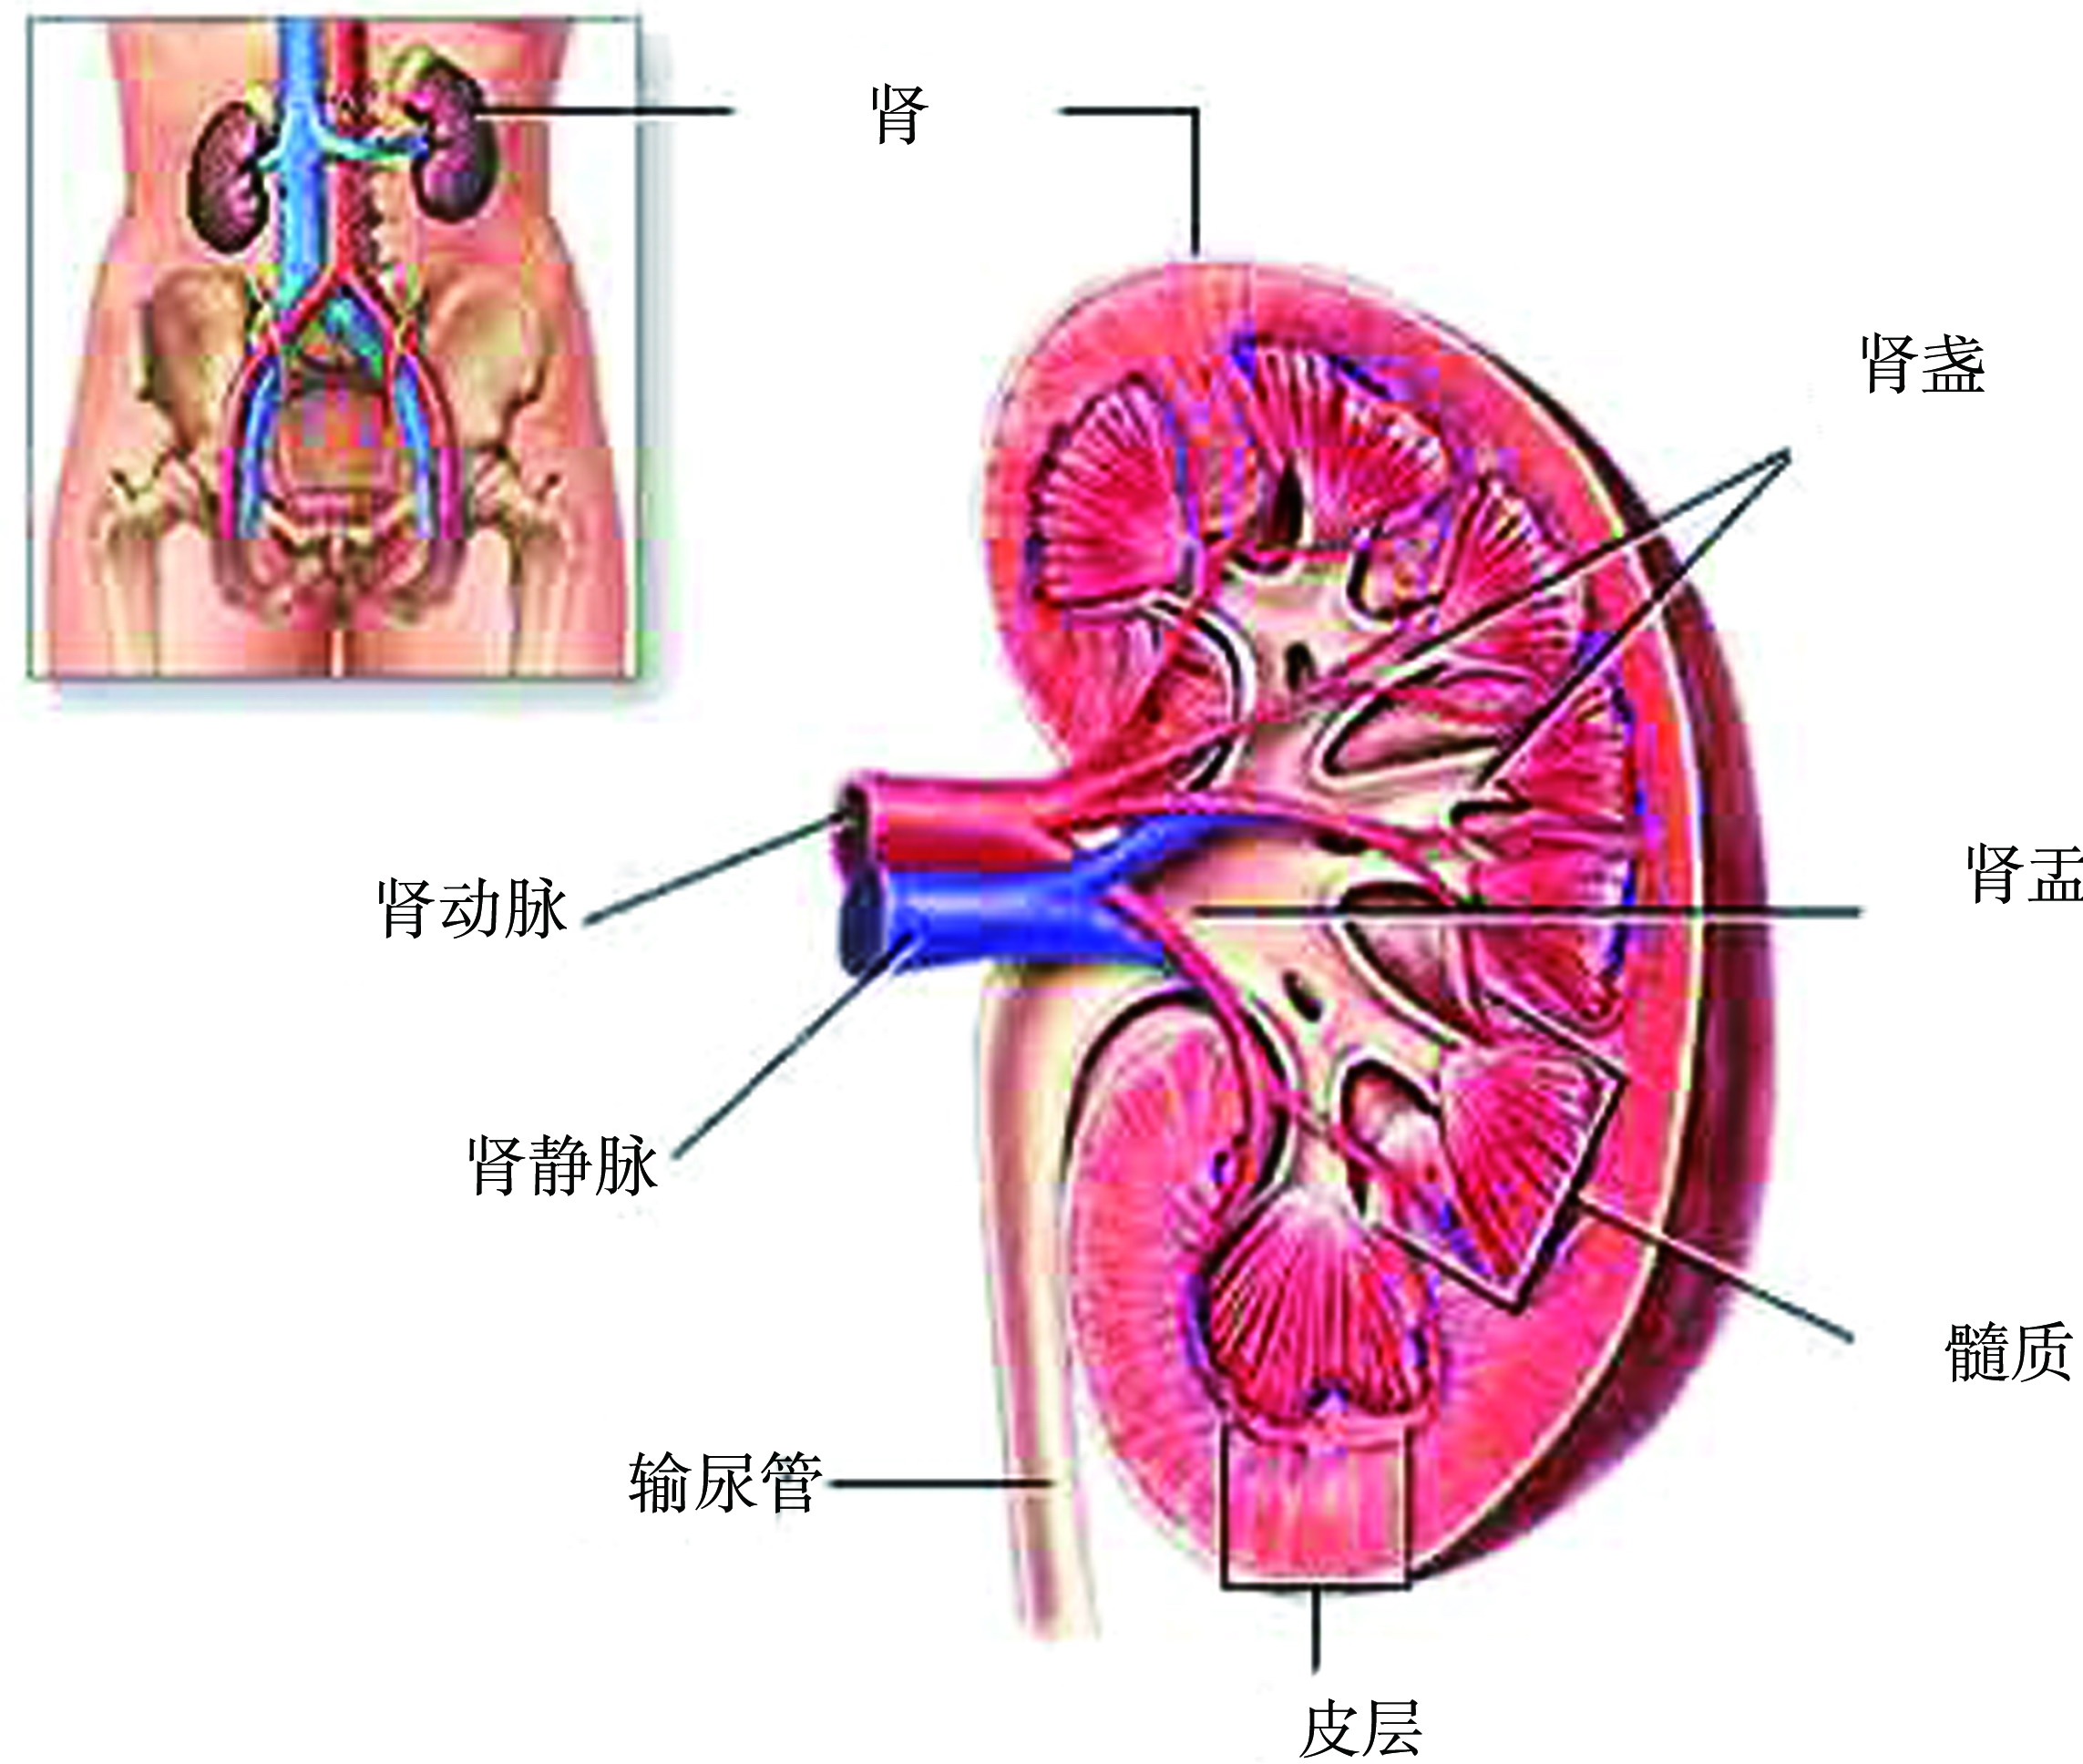 第一节 肾脏解剖学及组织学